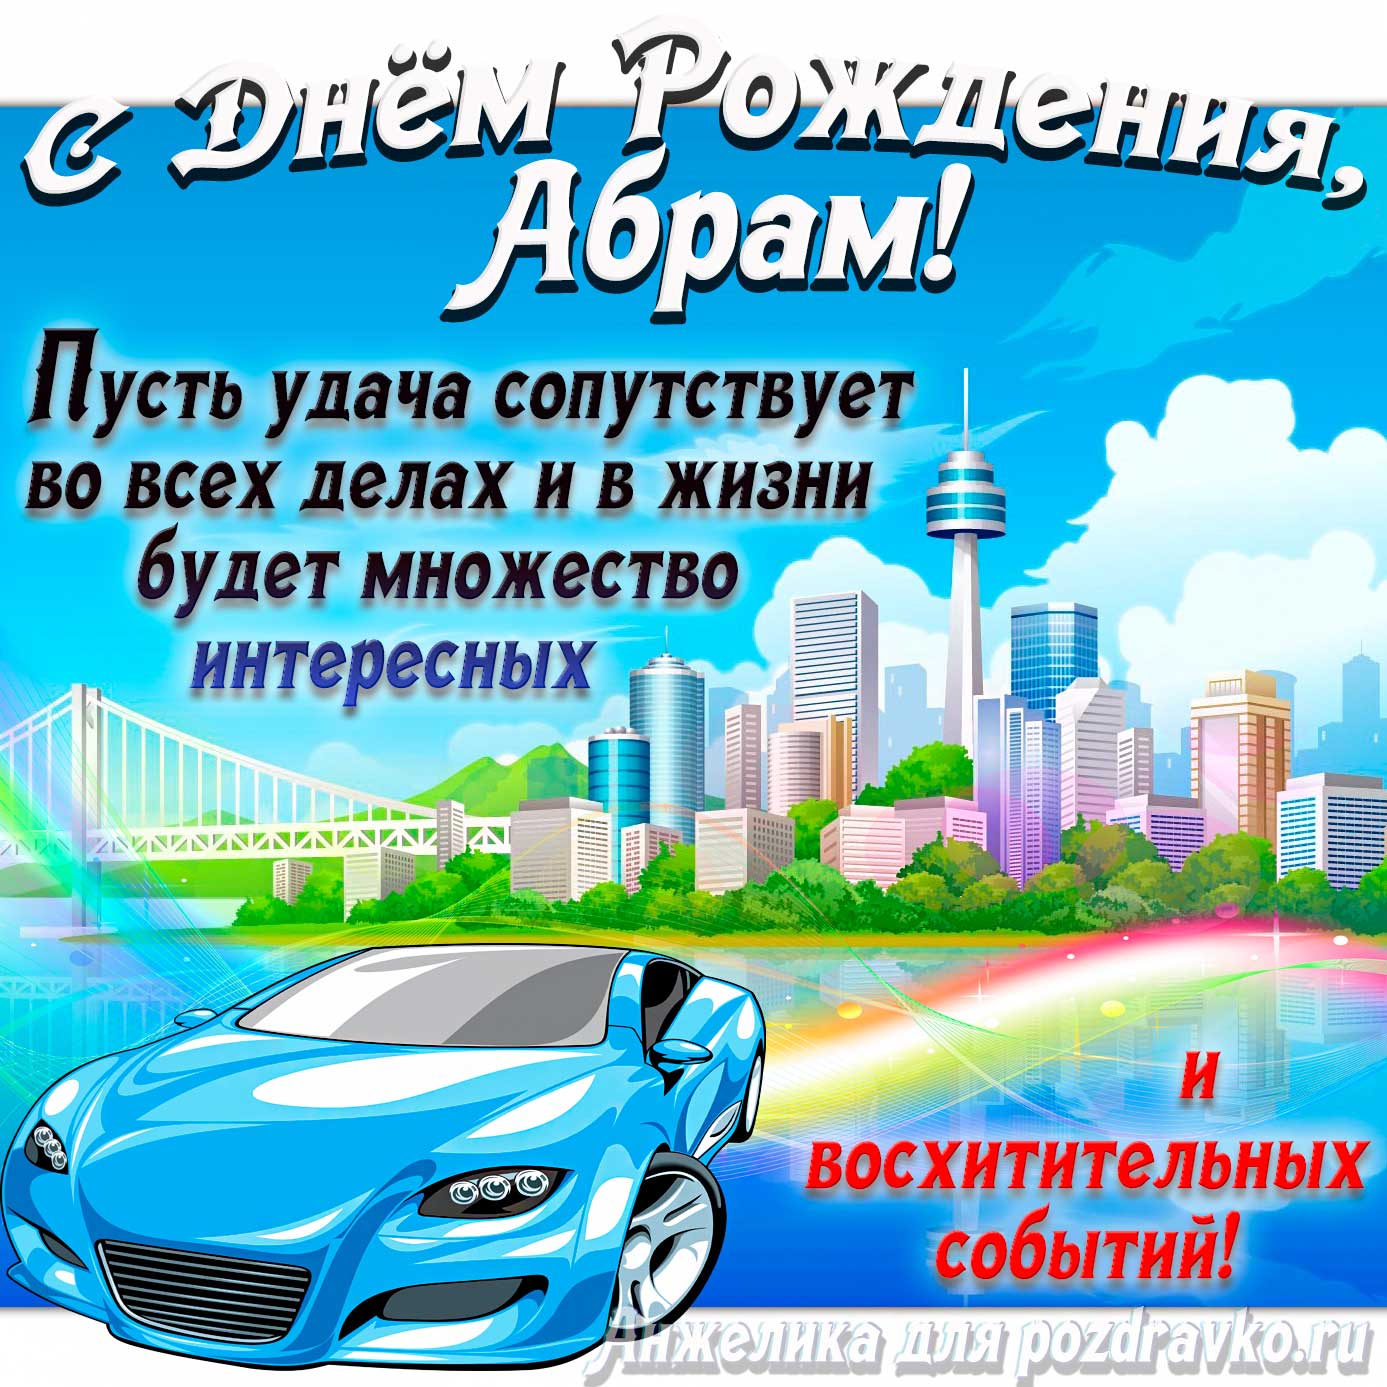 Открытка - с Днём Рождения Абрам с голубой машиной и пожеланием. Скачать бесплатно или отправить картинку.